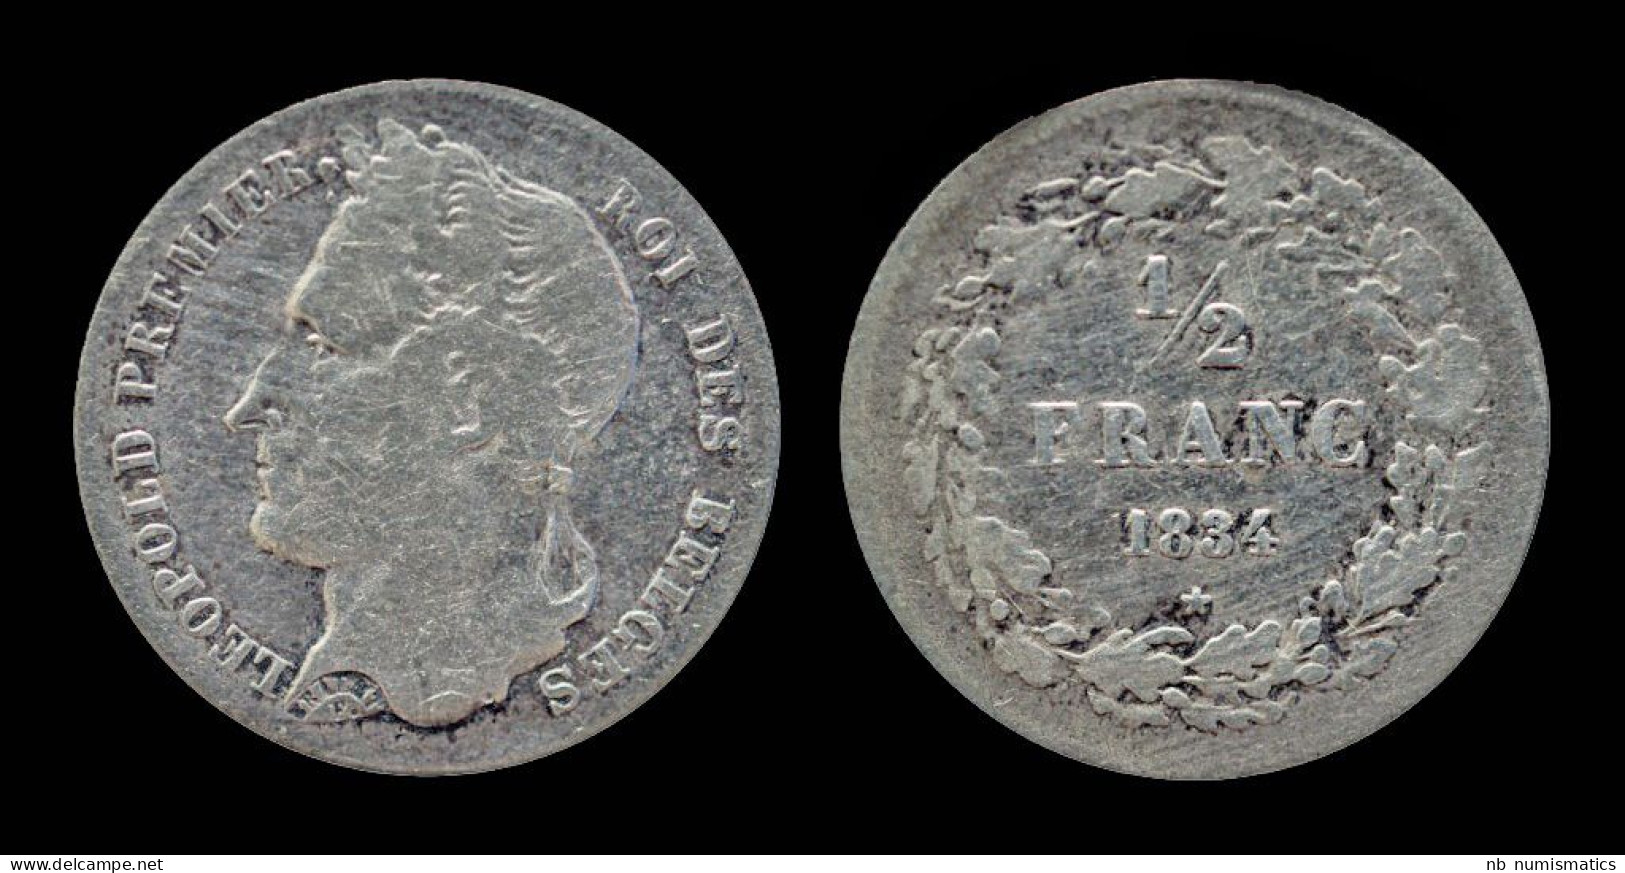 Belgium Leopold I 1/2 Frank 1834 - 1/2 Franc